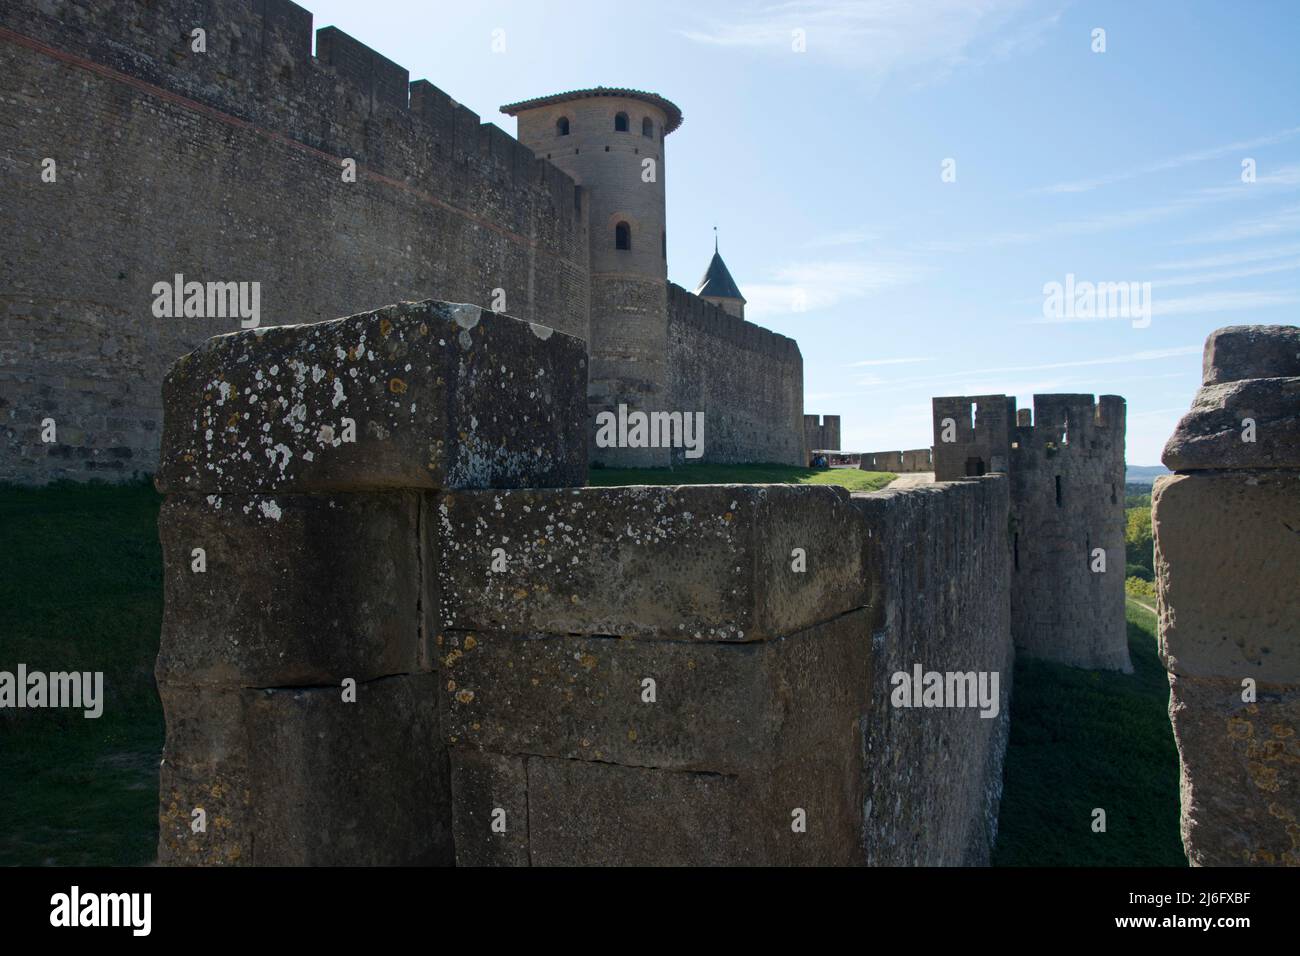 Die massive Festungsstadt von Carcassonne im Südwesen Frankreichs Stock Photo